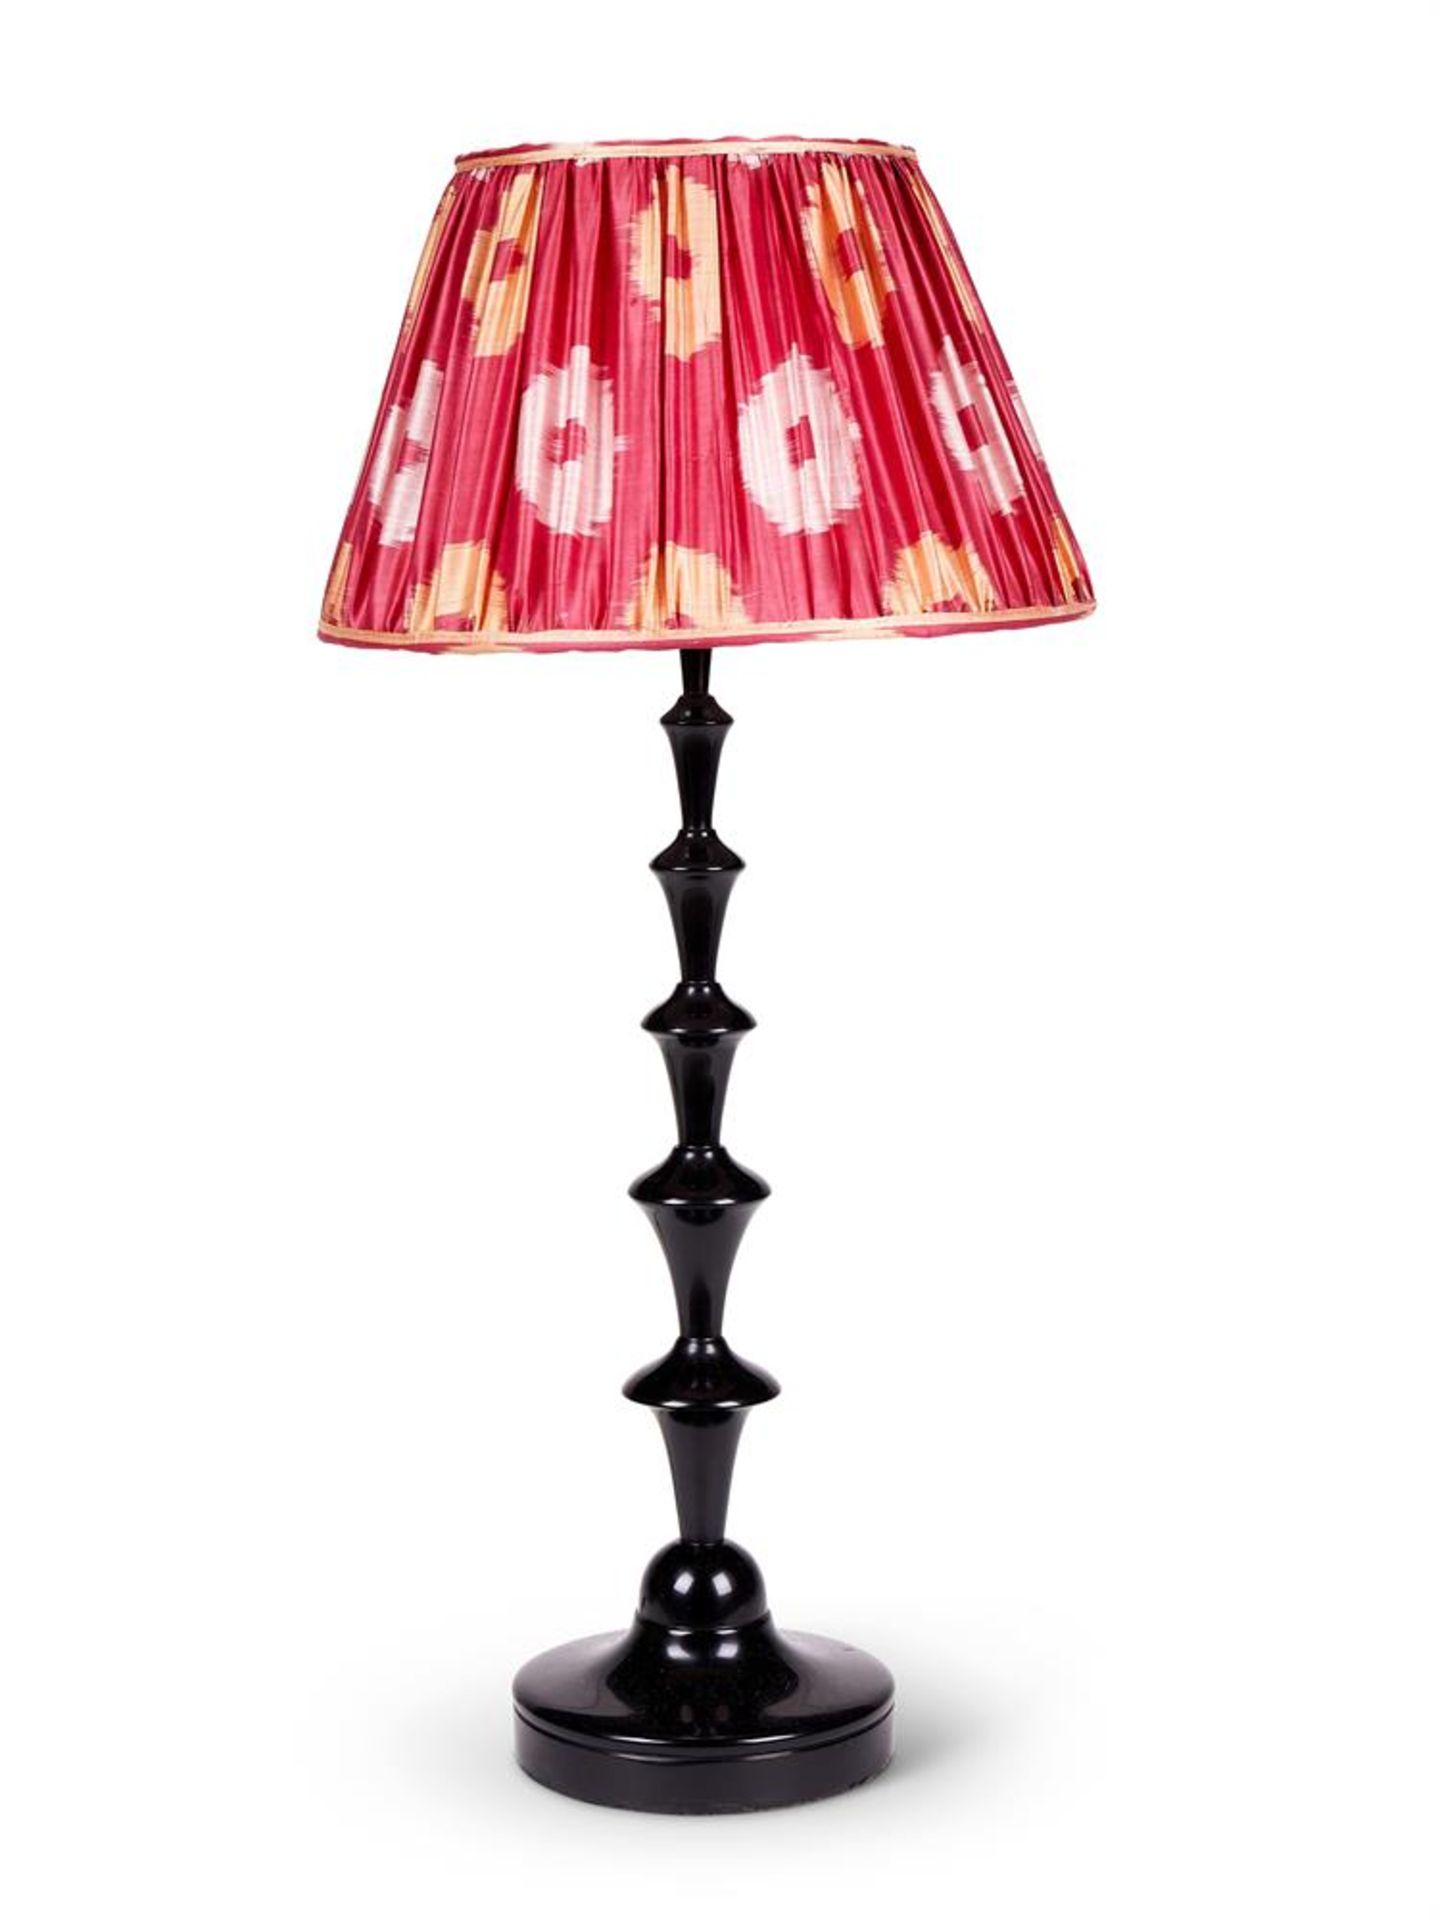 A BLACK CAST RESIN 'BEANPOLE' TABLE LAMP BY MARIANNA KENNEDY